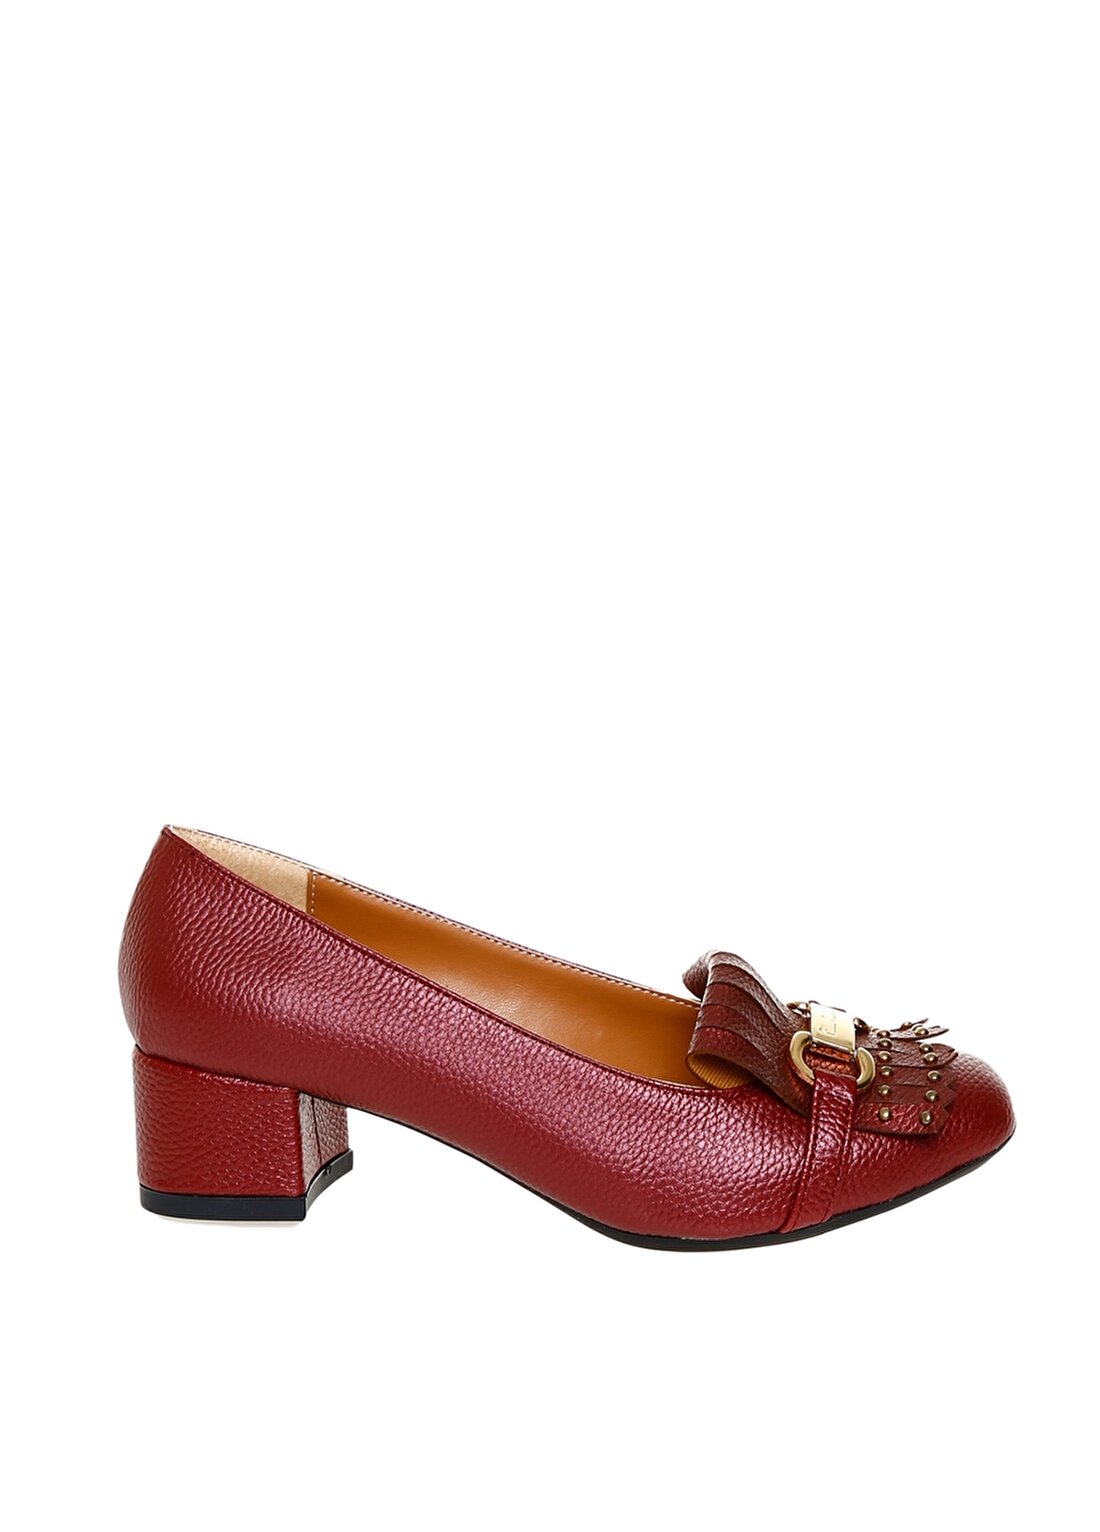 Pierre Cardin Logo Tokalı Kırmızı Kadın Topuklu Ayakkabı